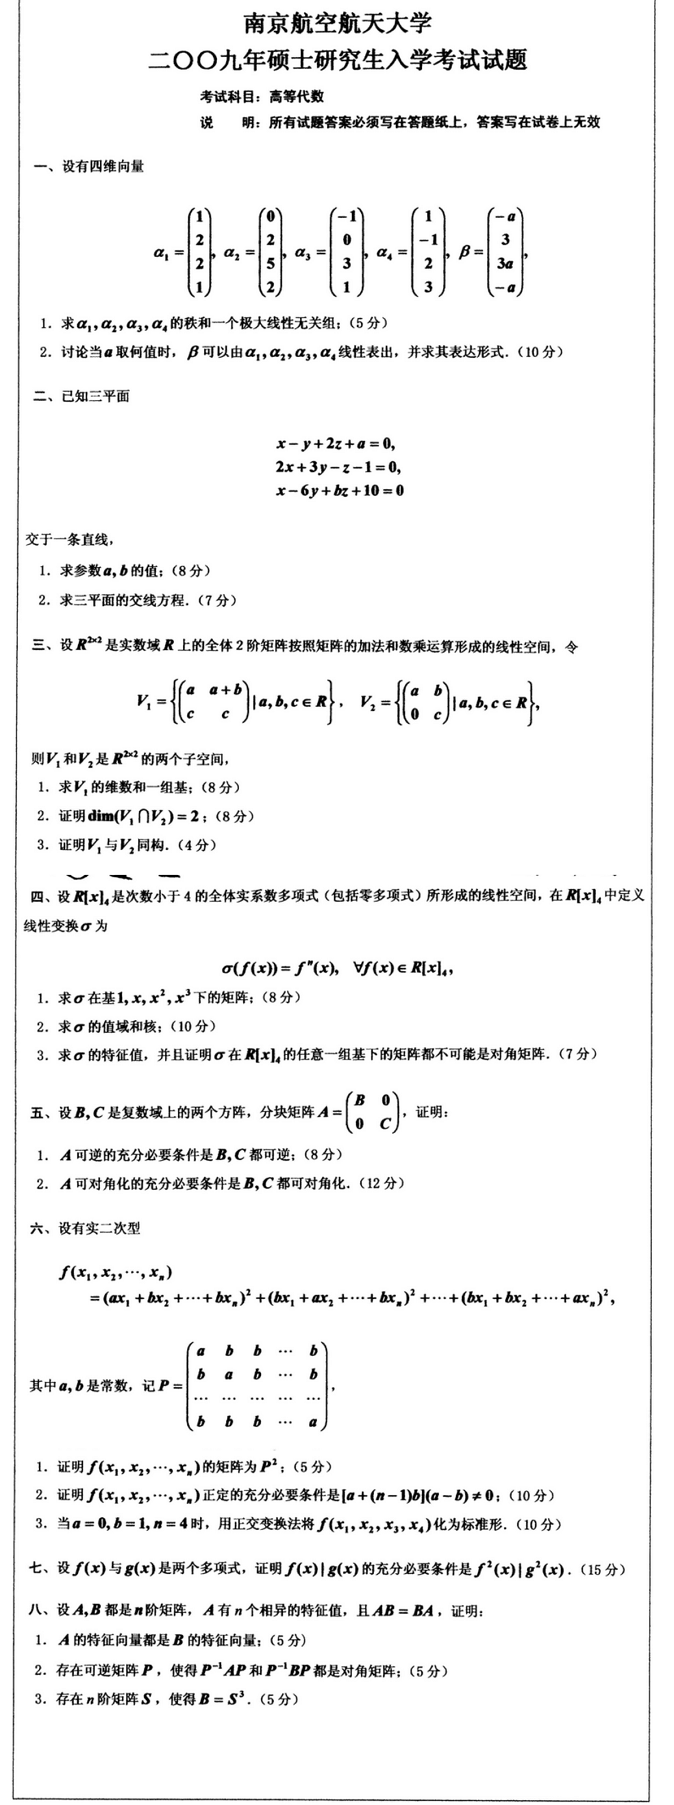 2009南京航空航天大学考研数学真题（高等代数）.png